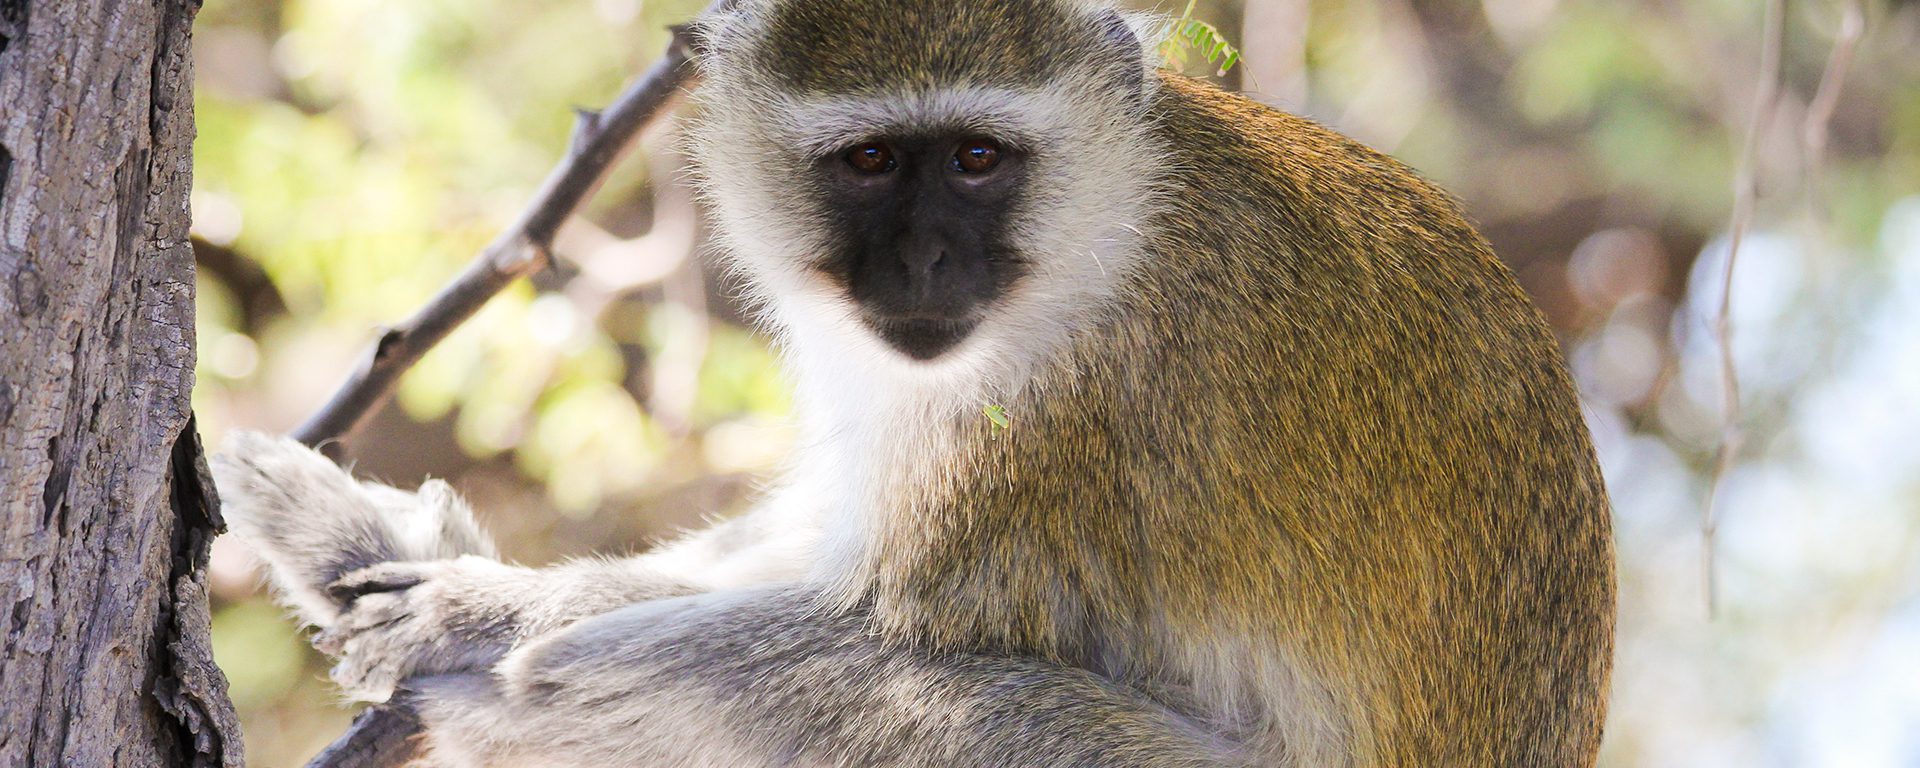 g2a_botswana_cheeky-vervet-monkeys-2_chobe